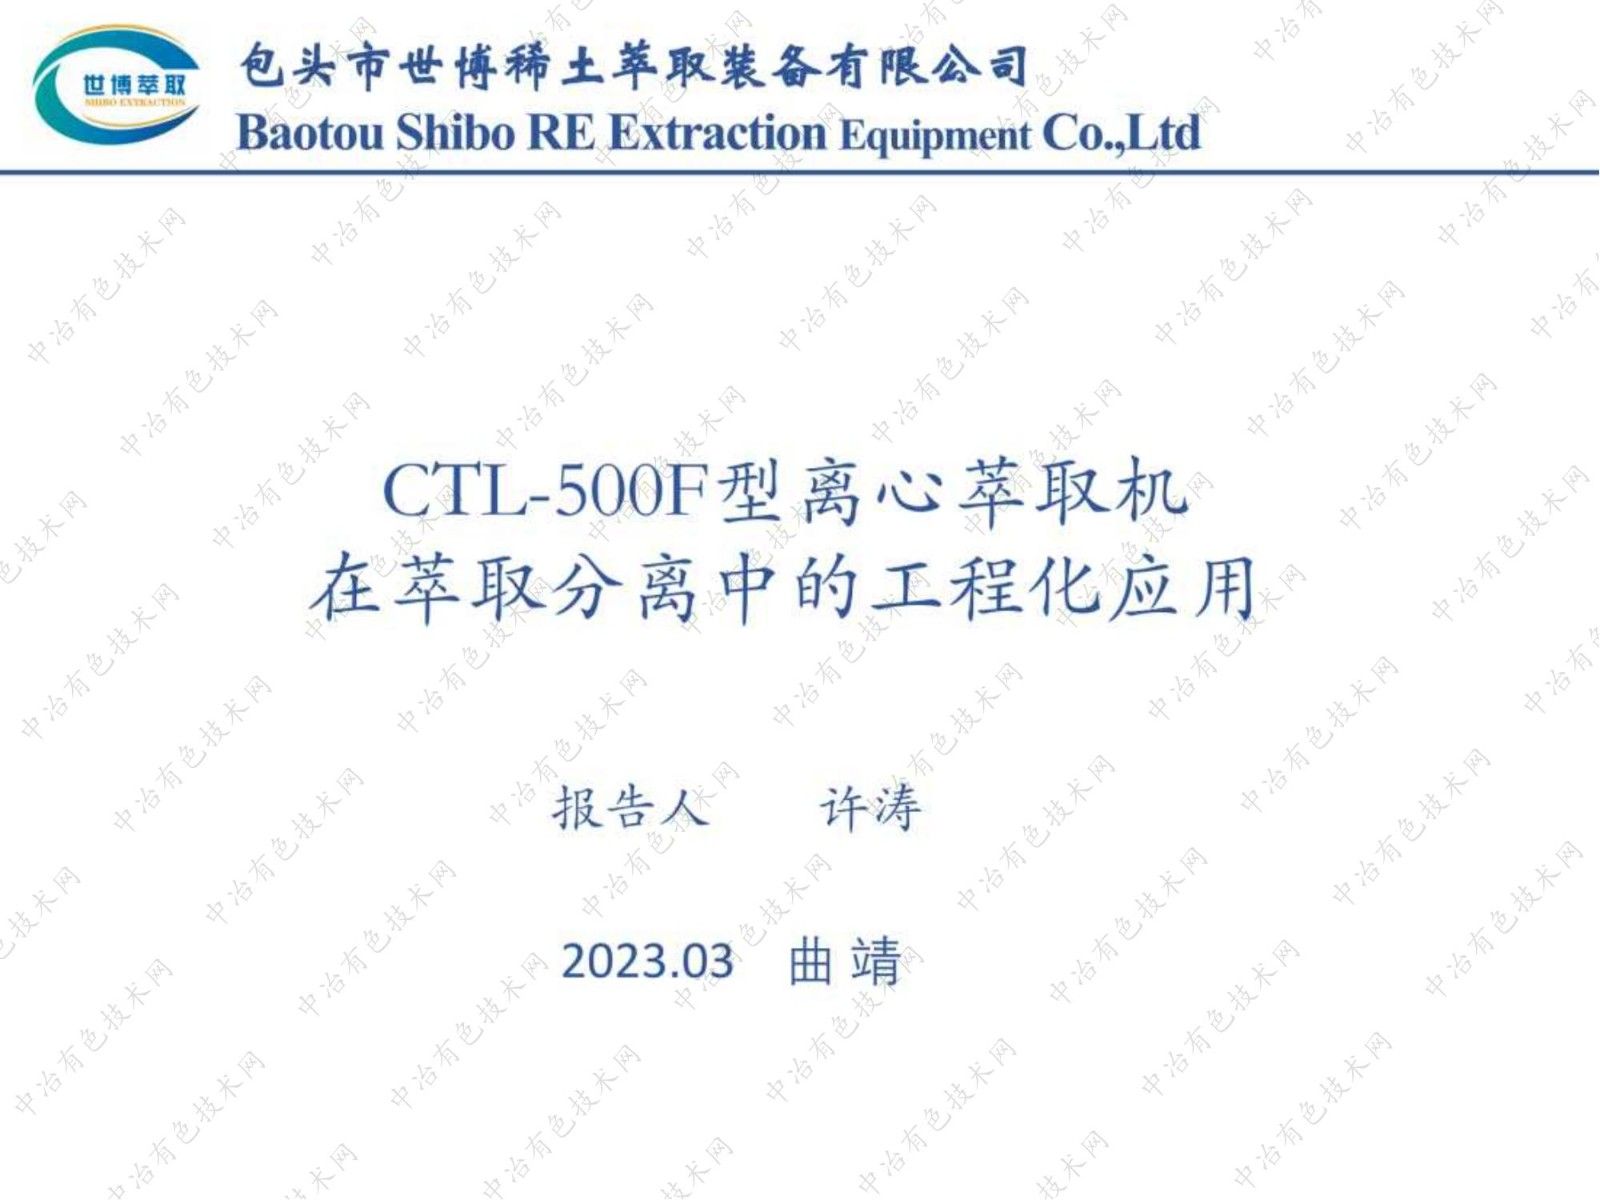 CTL-500F型离心萃取机 在萃取分离中的工程化应用